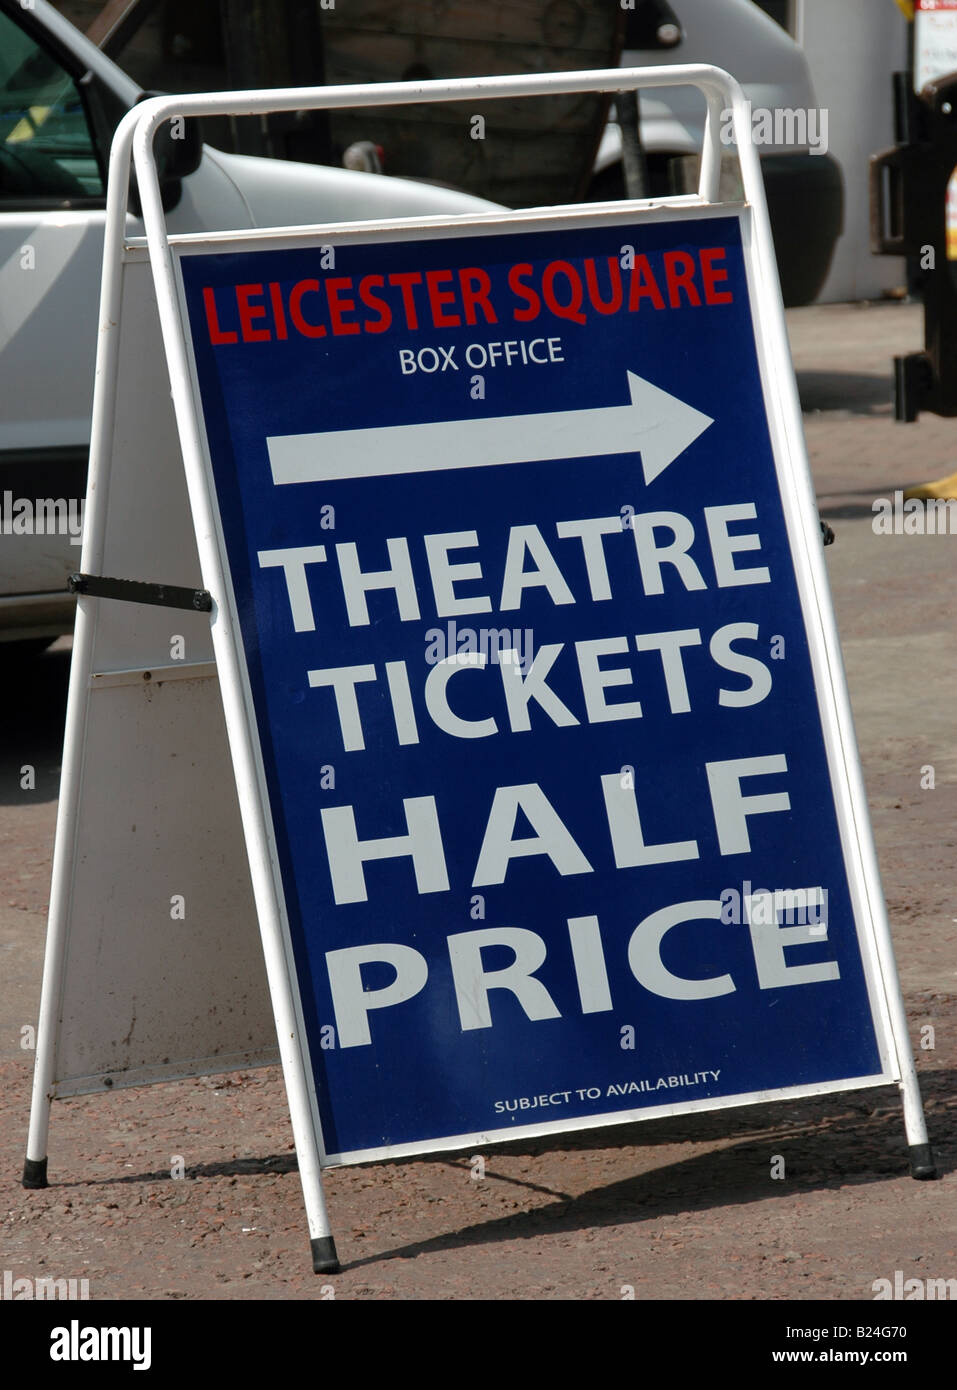 Box-Office-Zeichen am Leicester Square Theatertickets zum halben Preis verkaufen Stockfoto